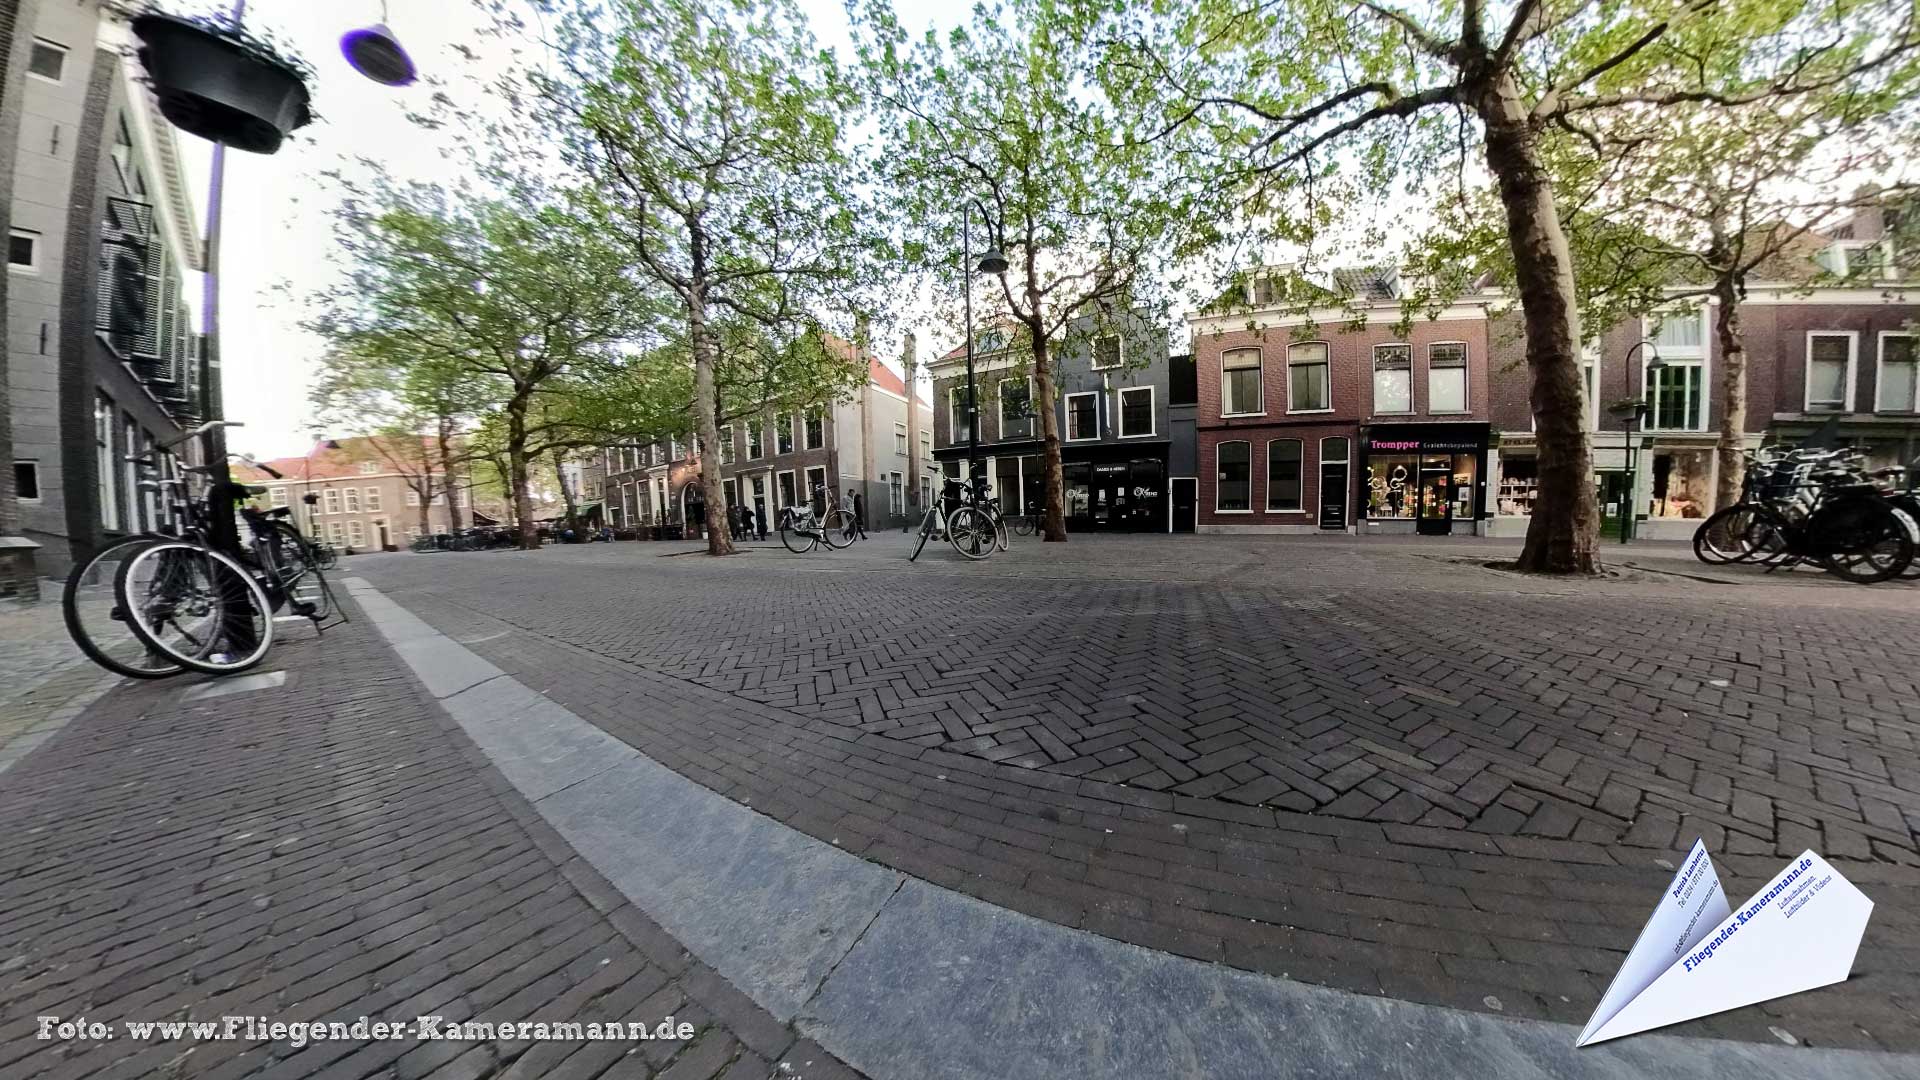 Maria van Jesse Kerk in Delft (NL) - 360°-Panorama